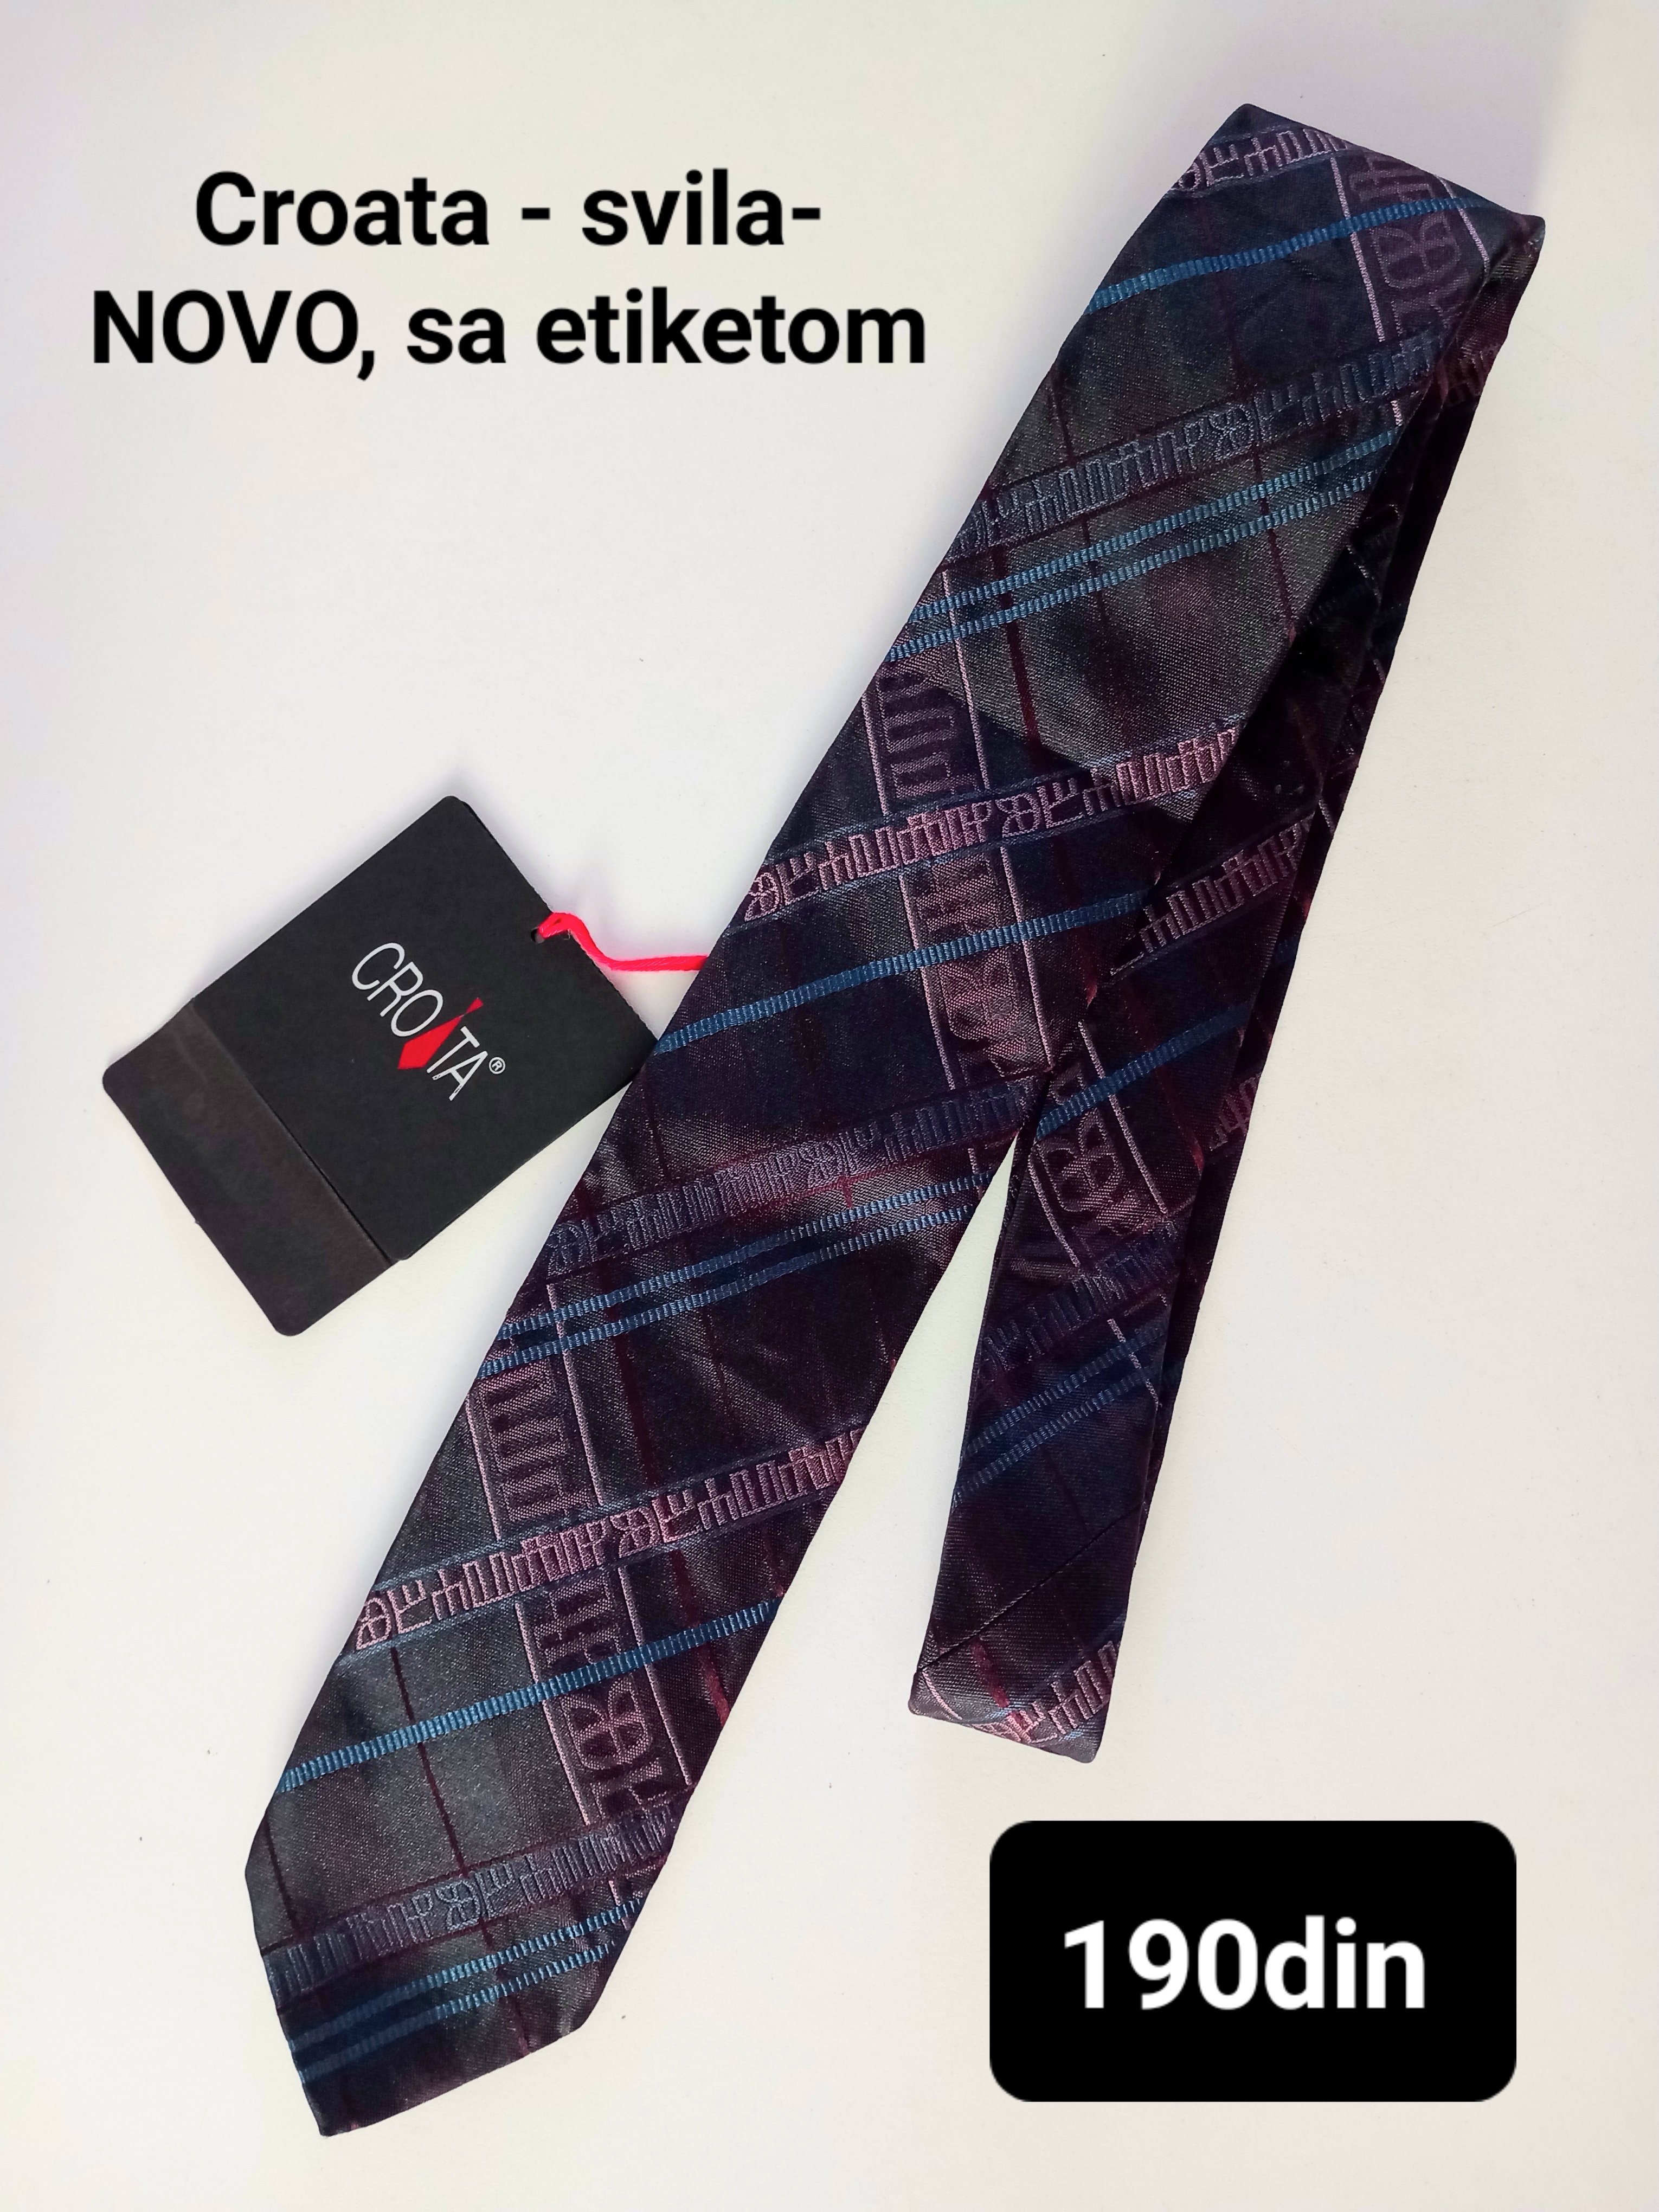 Croata muška svilena kravata - NOVO